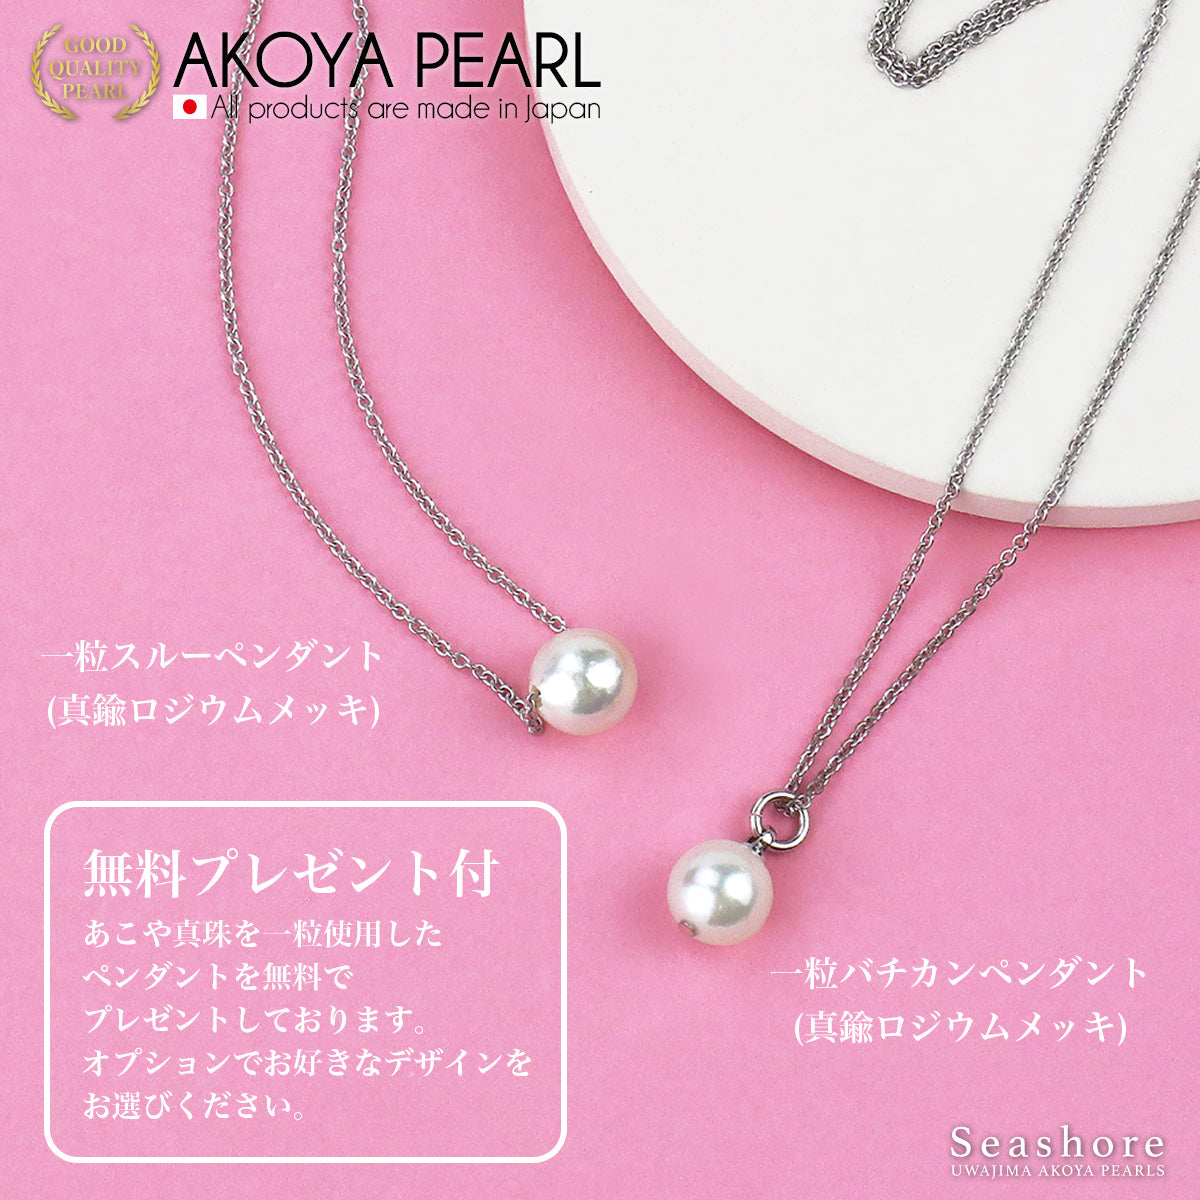 [特选材质：佛罗伦萨珍珠] Akoya 珍珠正装项链 2 件套 [8.0-8.5 毫米] 耳环/耳环 白色卷状厚度 0.5 毫米或以上 附有真品证书存储盒